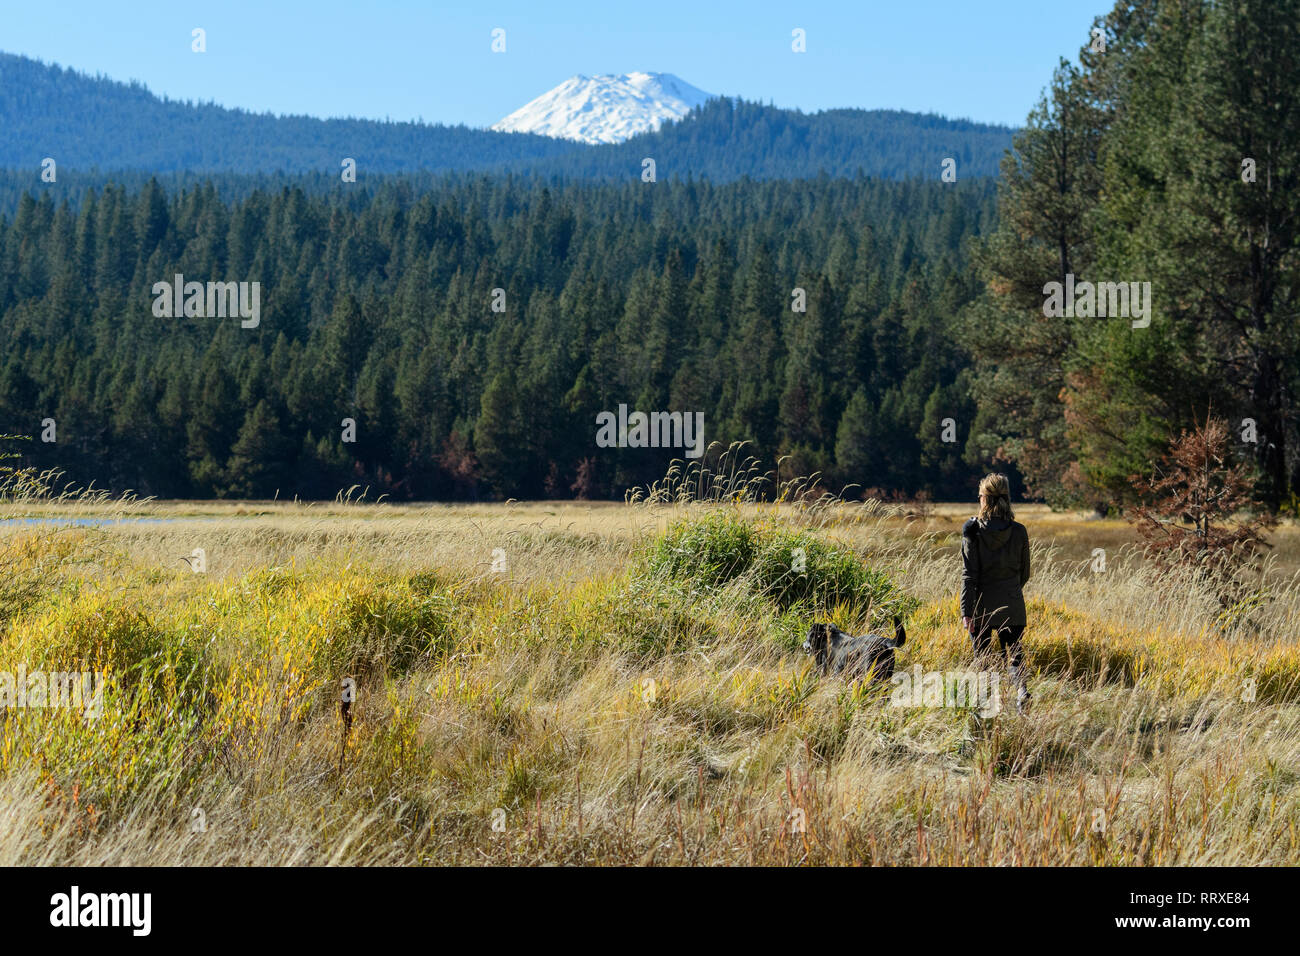 América del Norte, EE.UU., Central de Oregon, Oregon, Condado de Deschutes, mujer de hacer senderismo en el river trail con Mount Bachelor Foto de stock